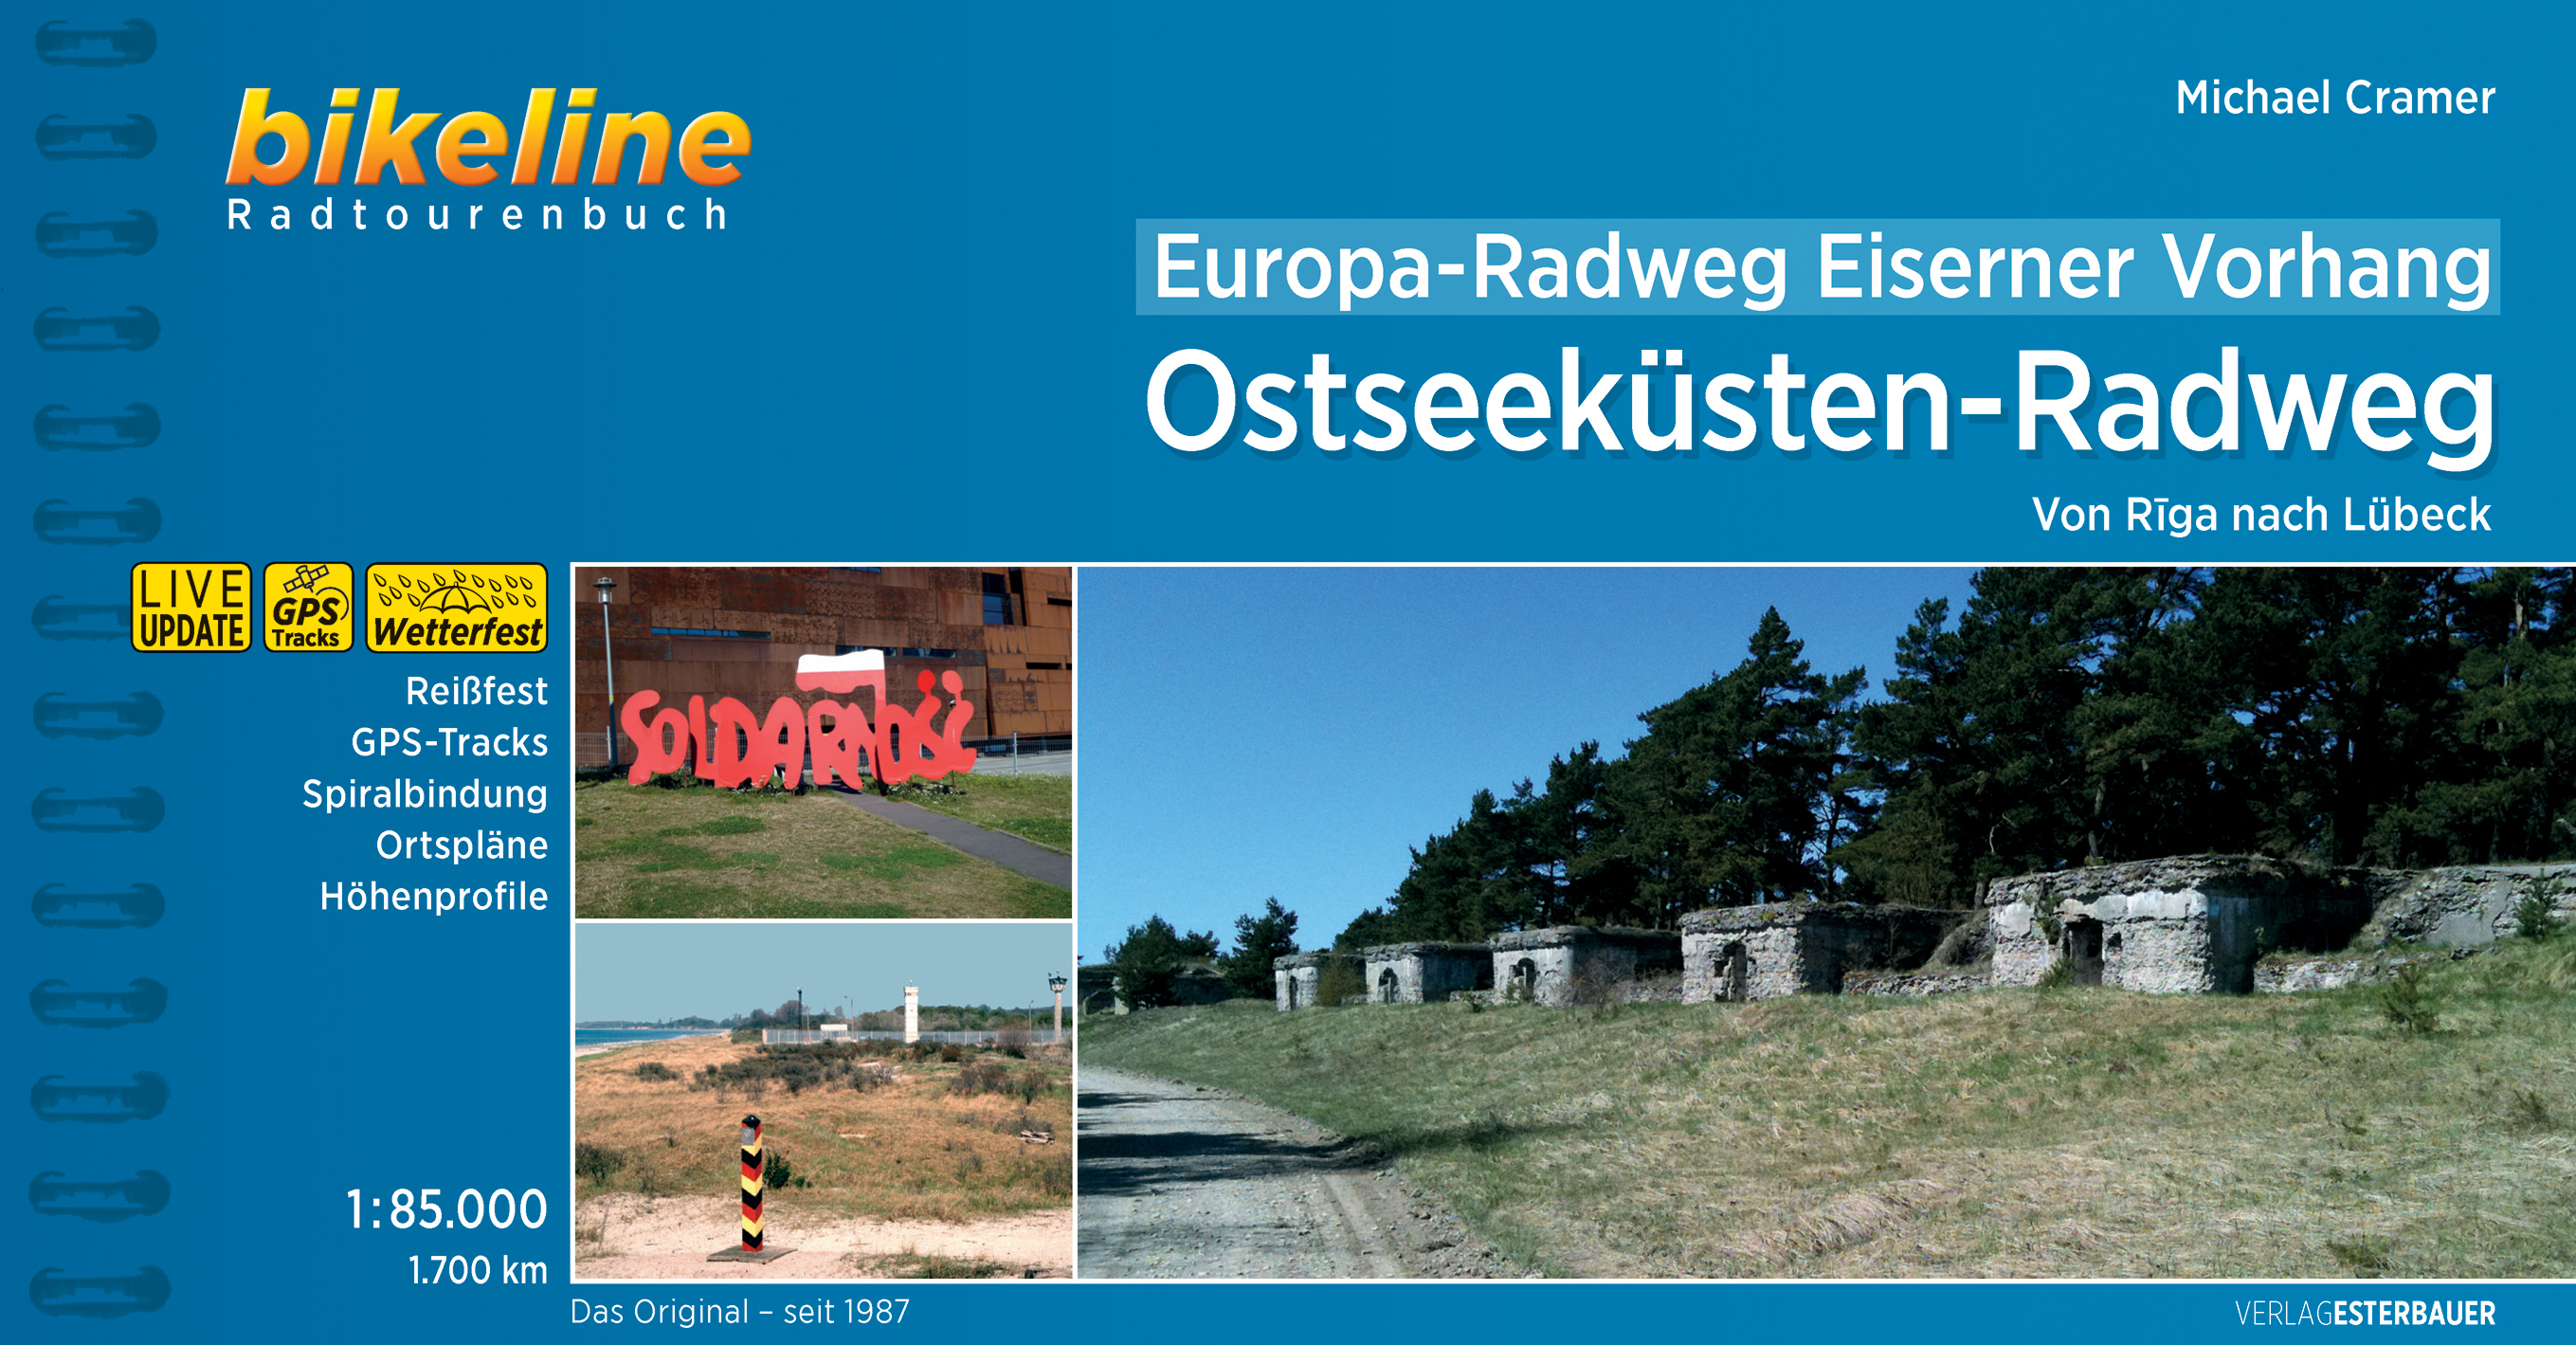 Online bestellen: Fietsgids Bikeline Europa-Radweg Eiserner Vorhang Ostseeküsten-Radweg | Esterbauer